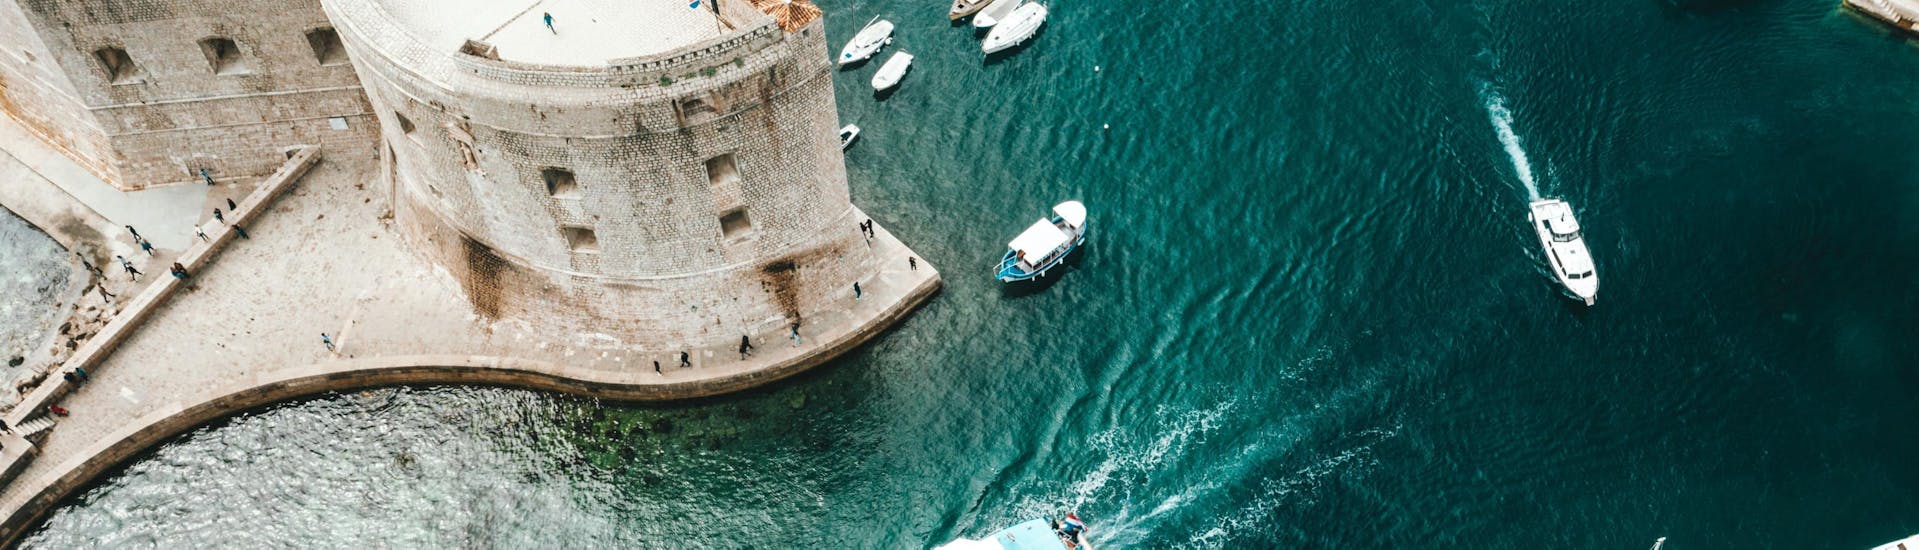 Boottocht van Dubrovnik naar Island Koločep met zwemmen & toeristische attracties.